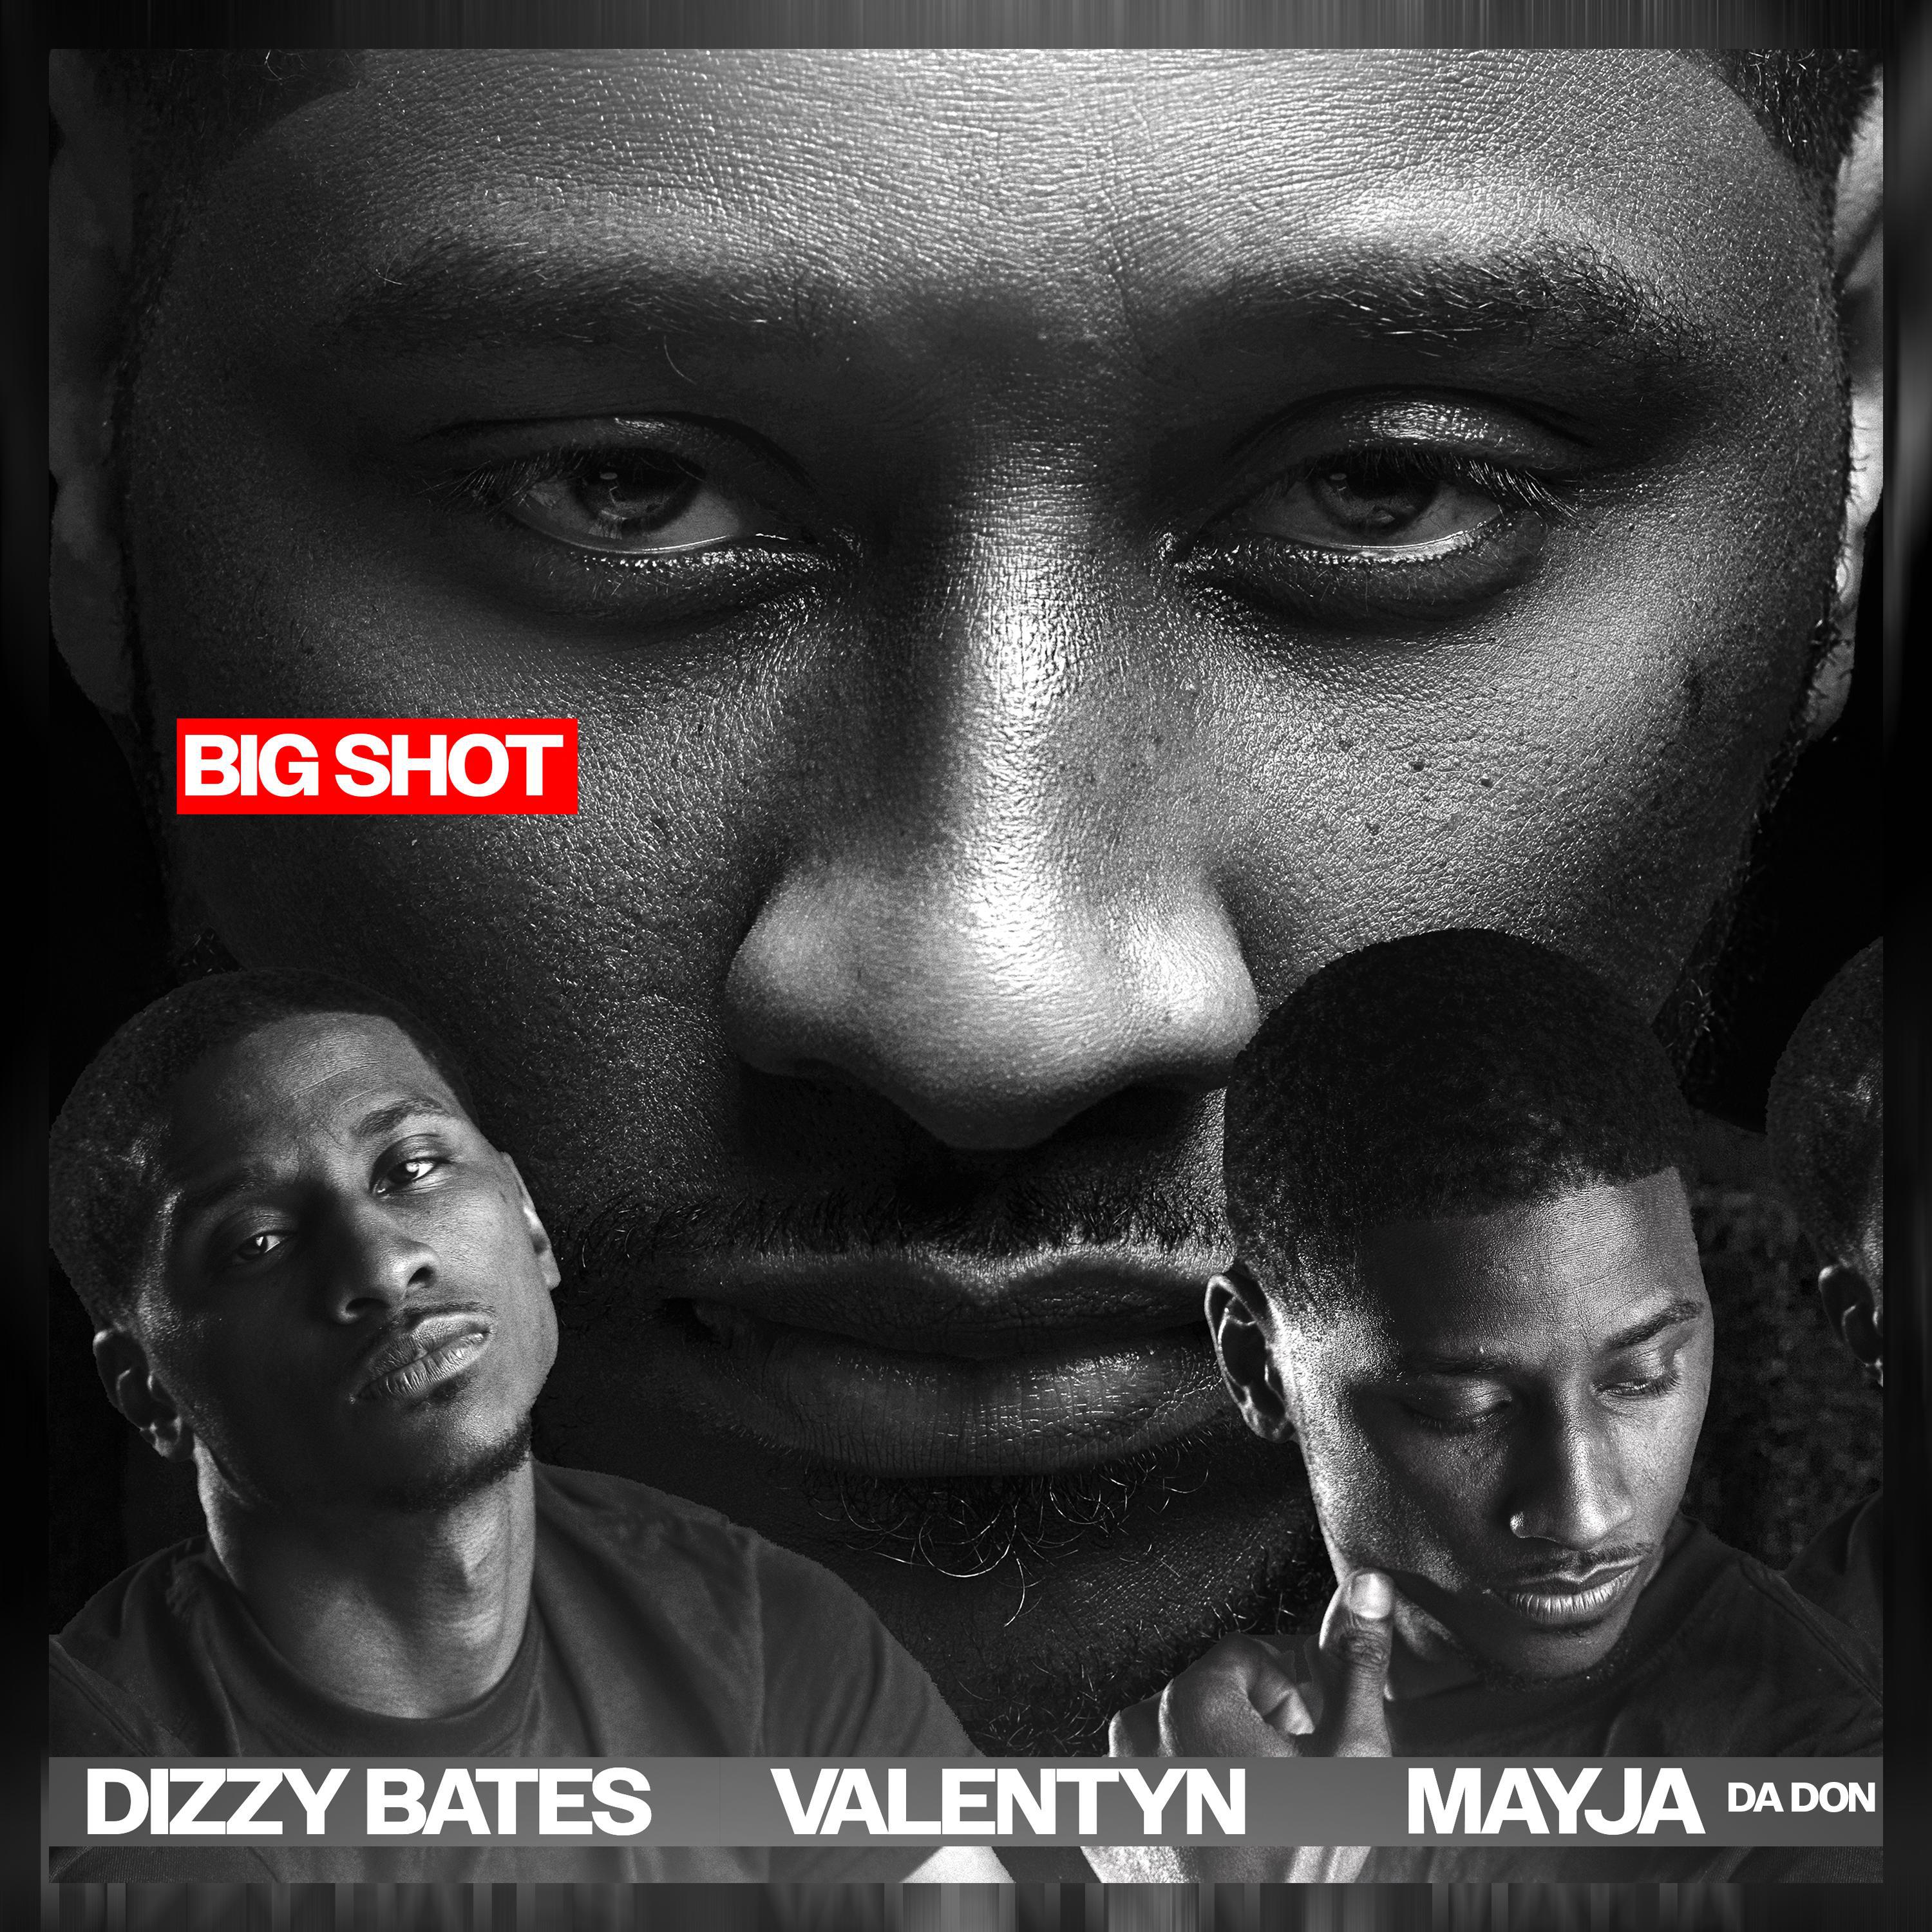 Dizzy Bates - BIG SHOT (feat. Valentyn & Mayja Da Don)